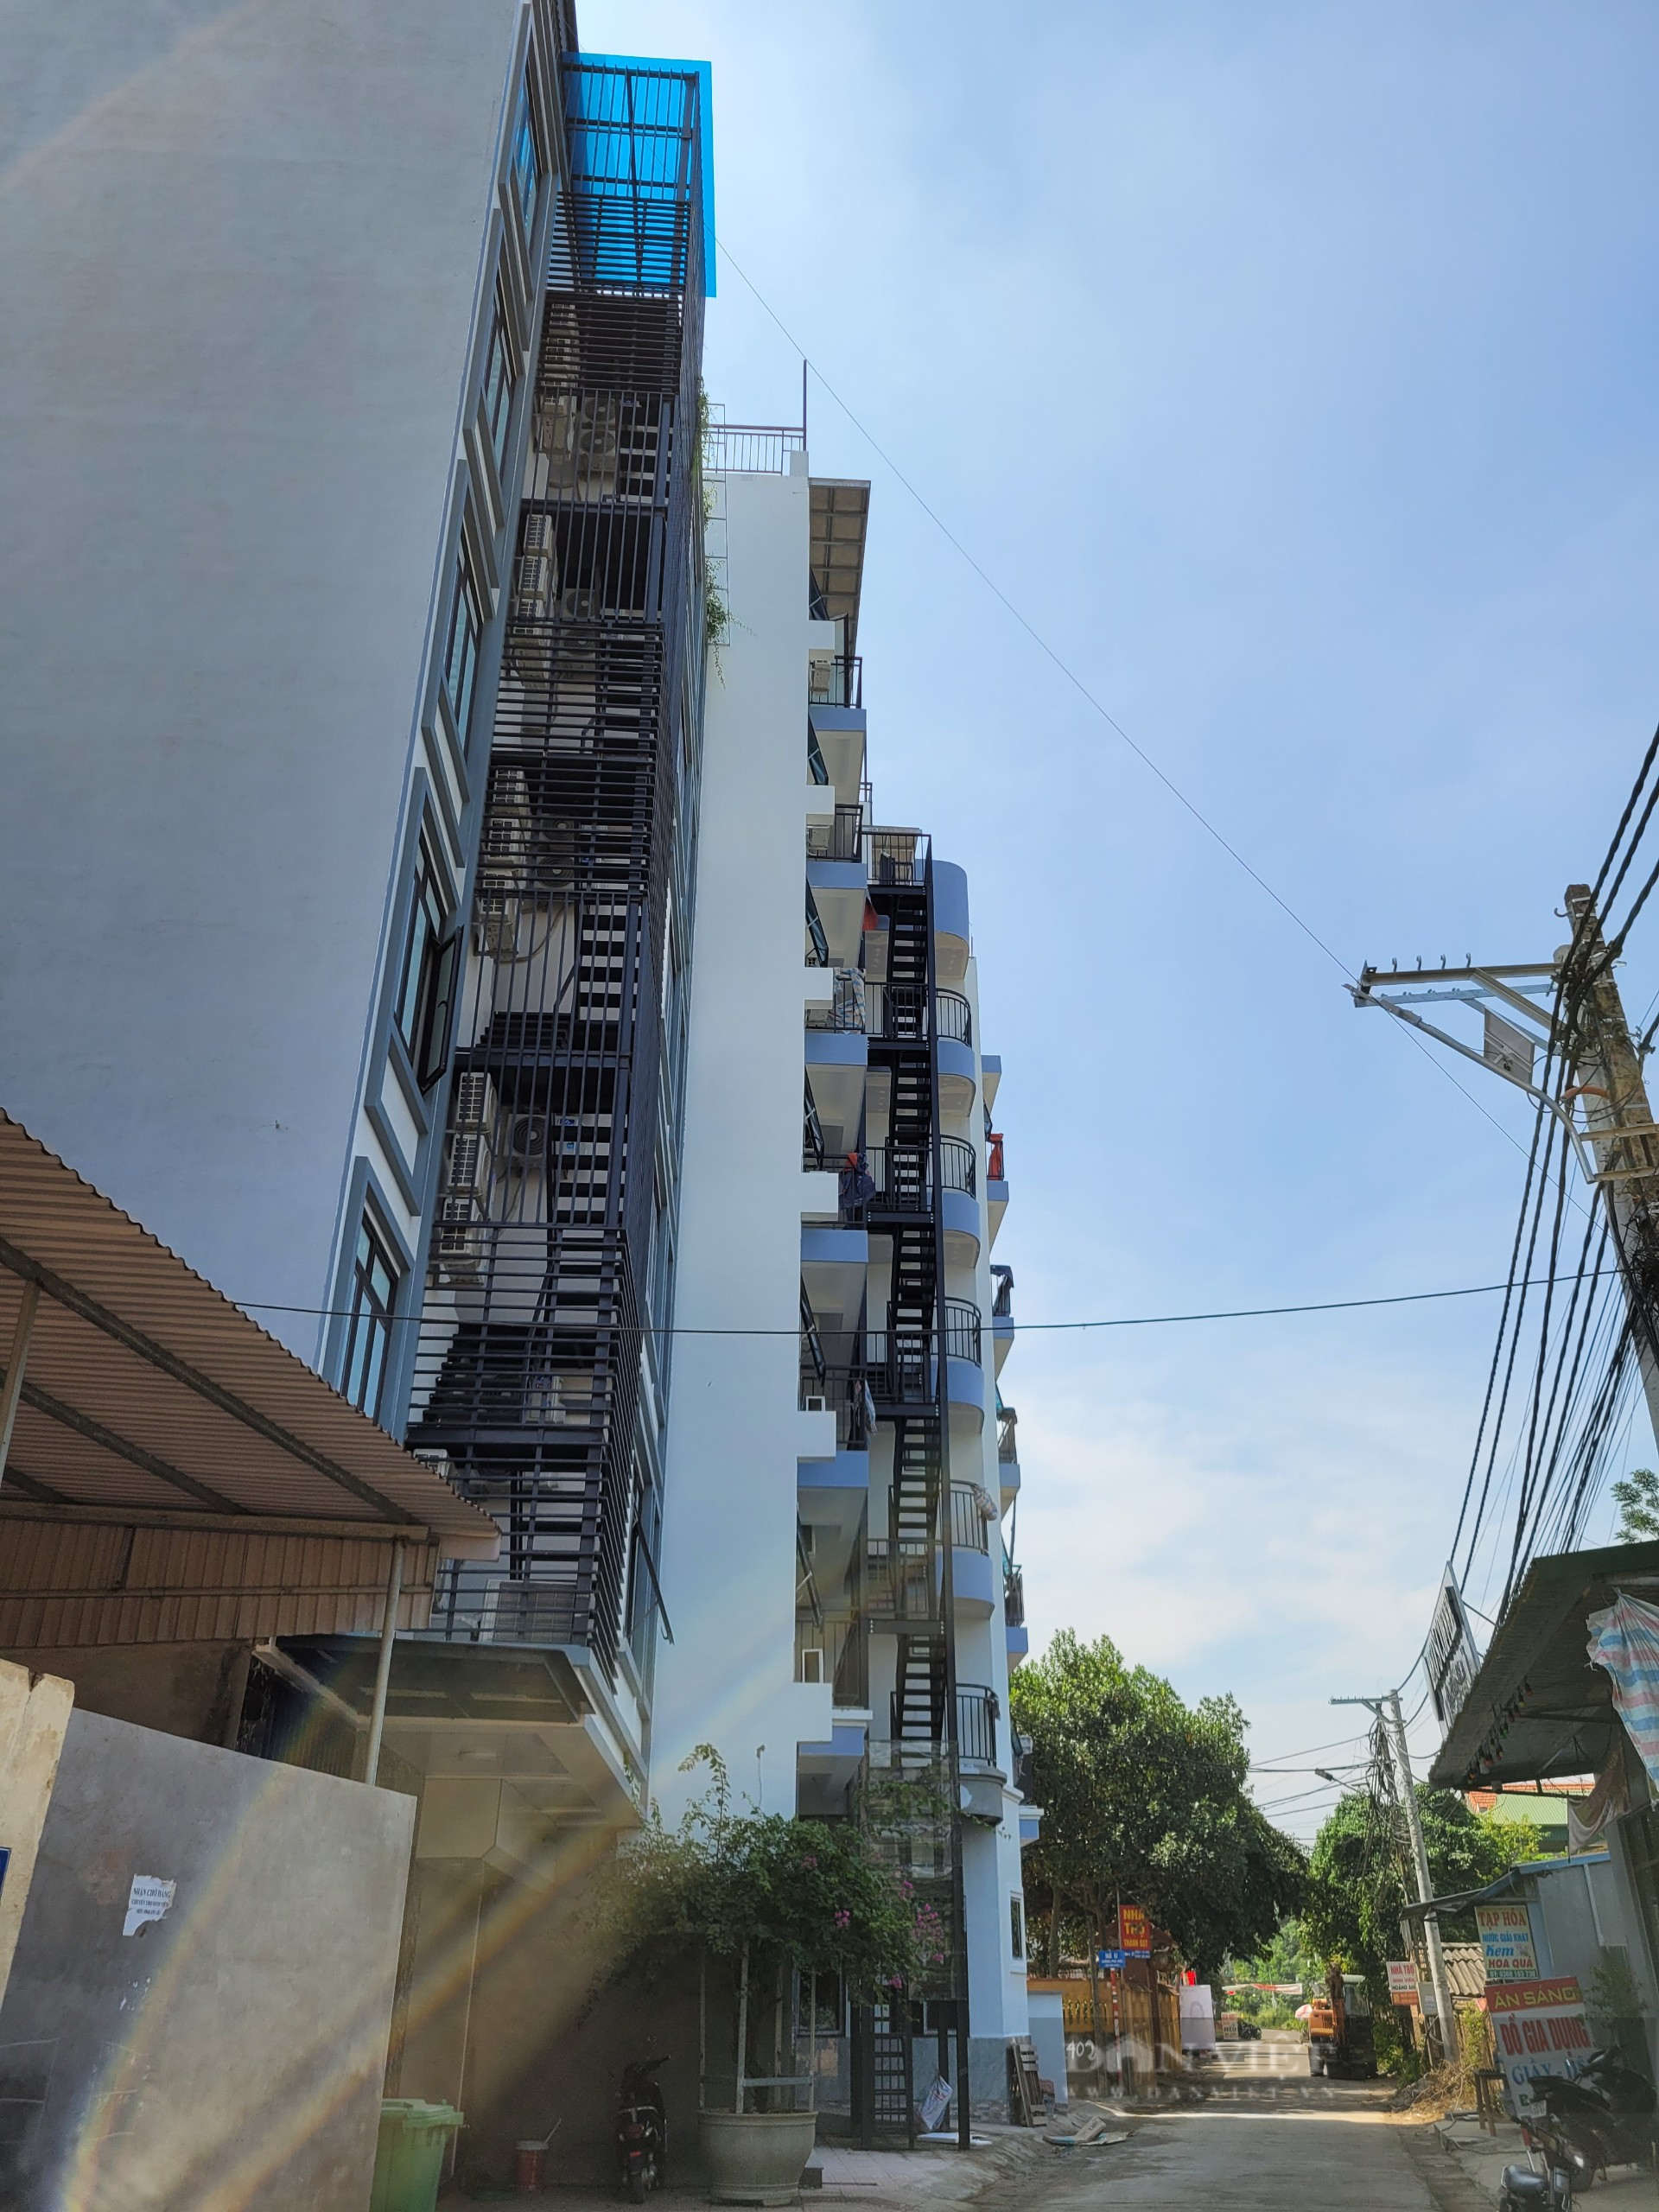 Hàng loạt chung cư mini bề thế cùng khu với công trình xây vượt 5 tầng, gần 200 căn hộ ở Thạch Thất - Ảnh 7.